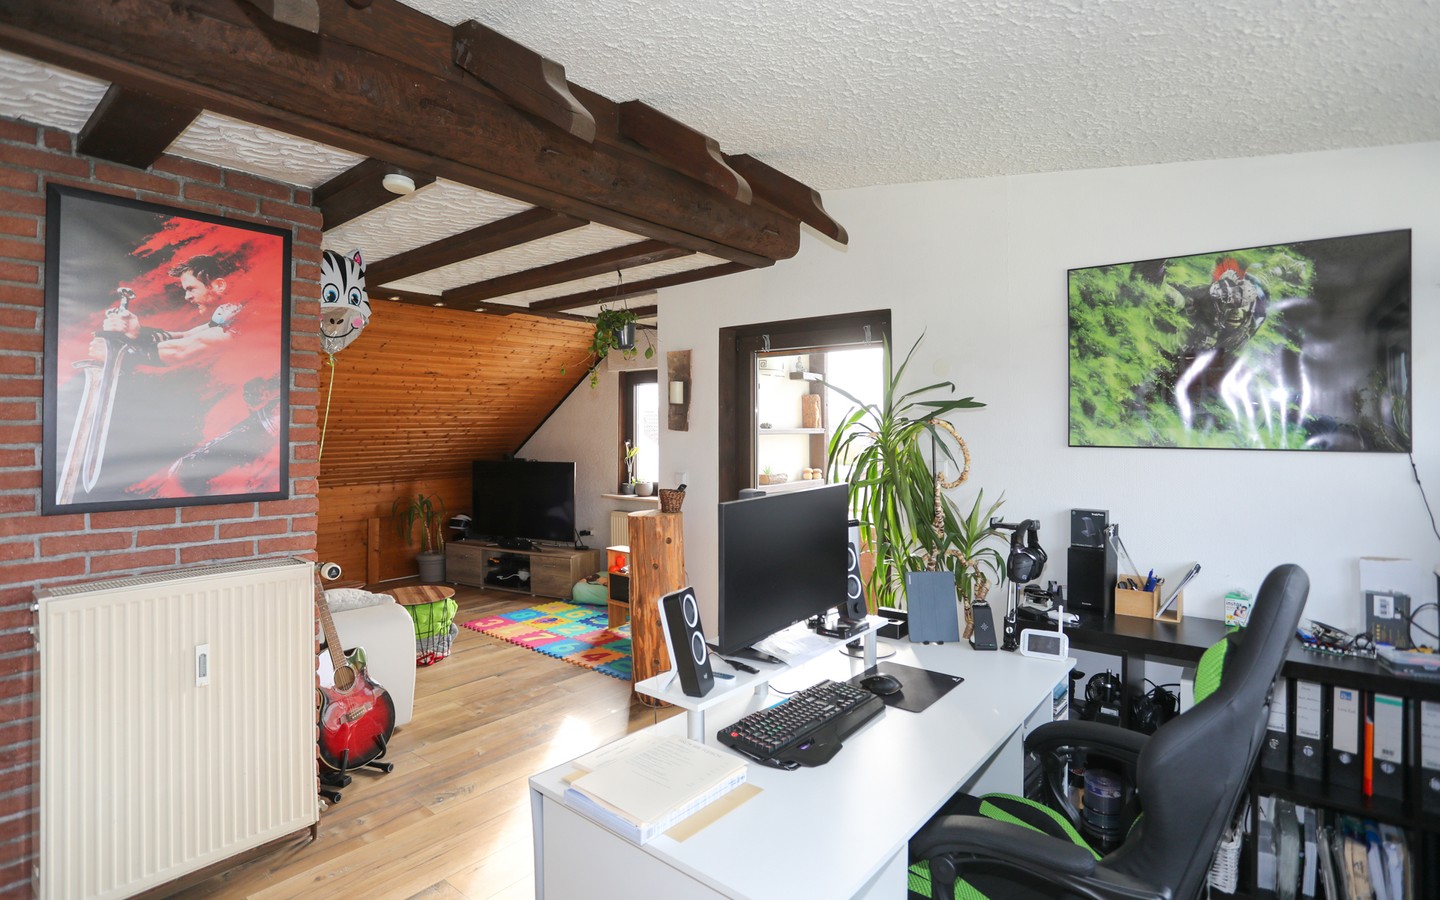 Wohnzimmer DG - Eppelheim: MFH auf großem Erbpachtgrundstück in 
familienfreundlicher Wohnlage zur flexiblen Nutzung